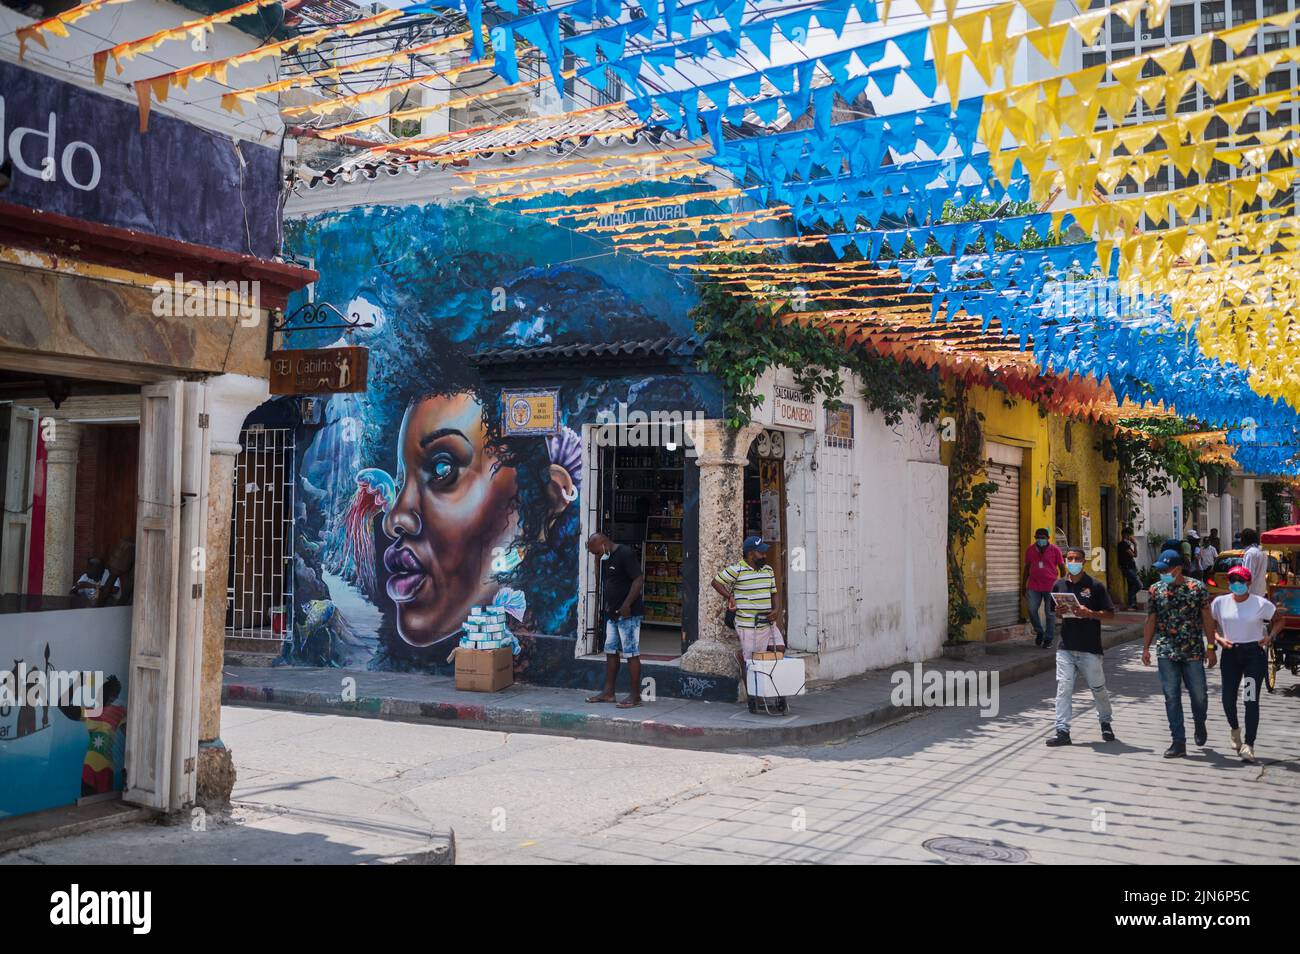 Farbenfrohe Graffitis bereichern die Mauern von Getsemani, dem coolsten Viertel in Cartagena de Indias, Kolumbien Stockfoto